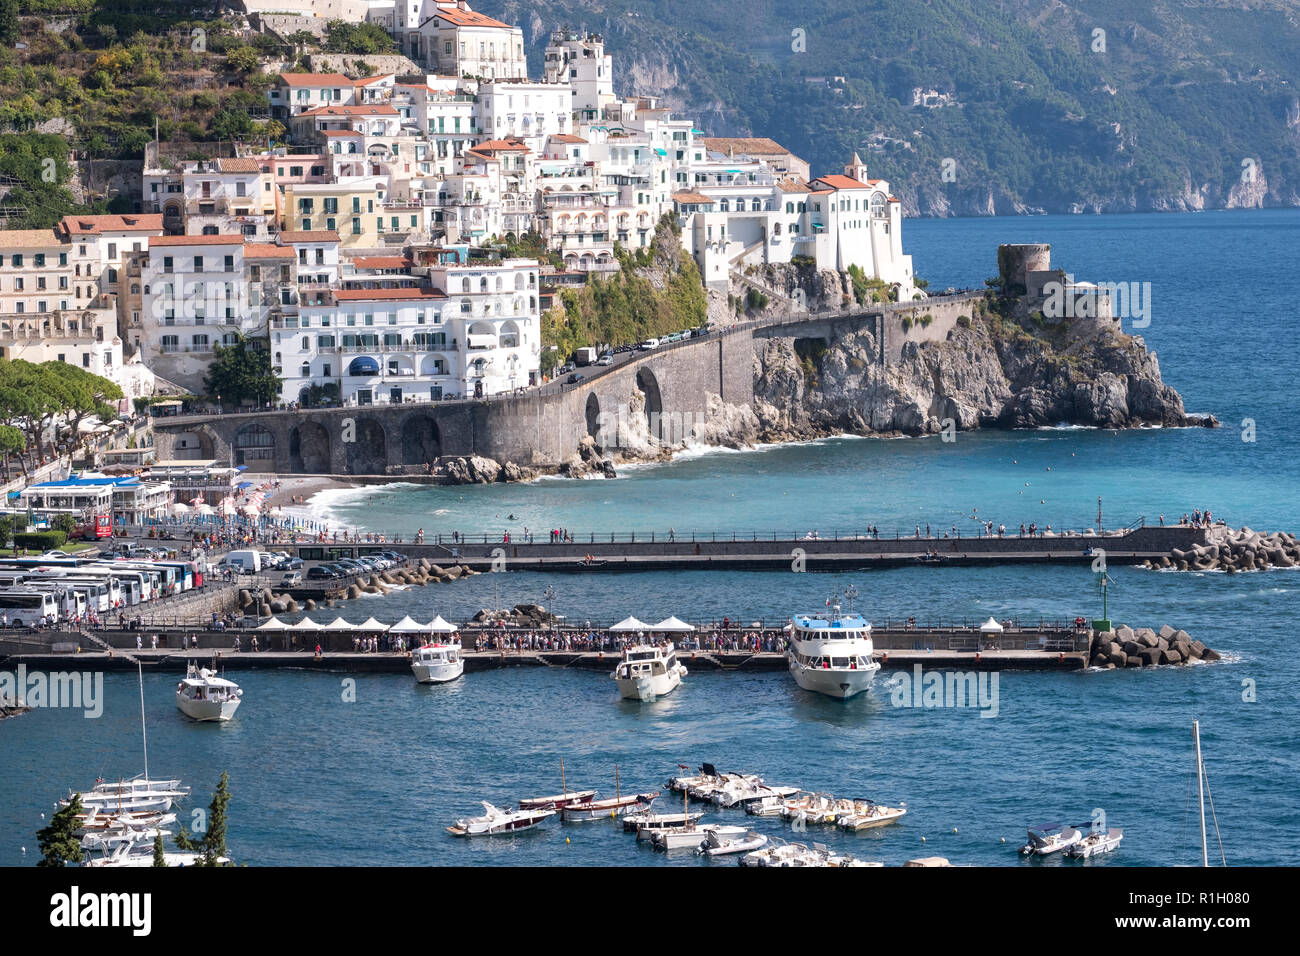 La ciudad y el puerto de Amalfi en la costa de Amalfi en el sur de Italia.  Fotografiado en un día claro a principios de otoño Fotografía de stock -  Alamy